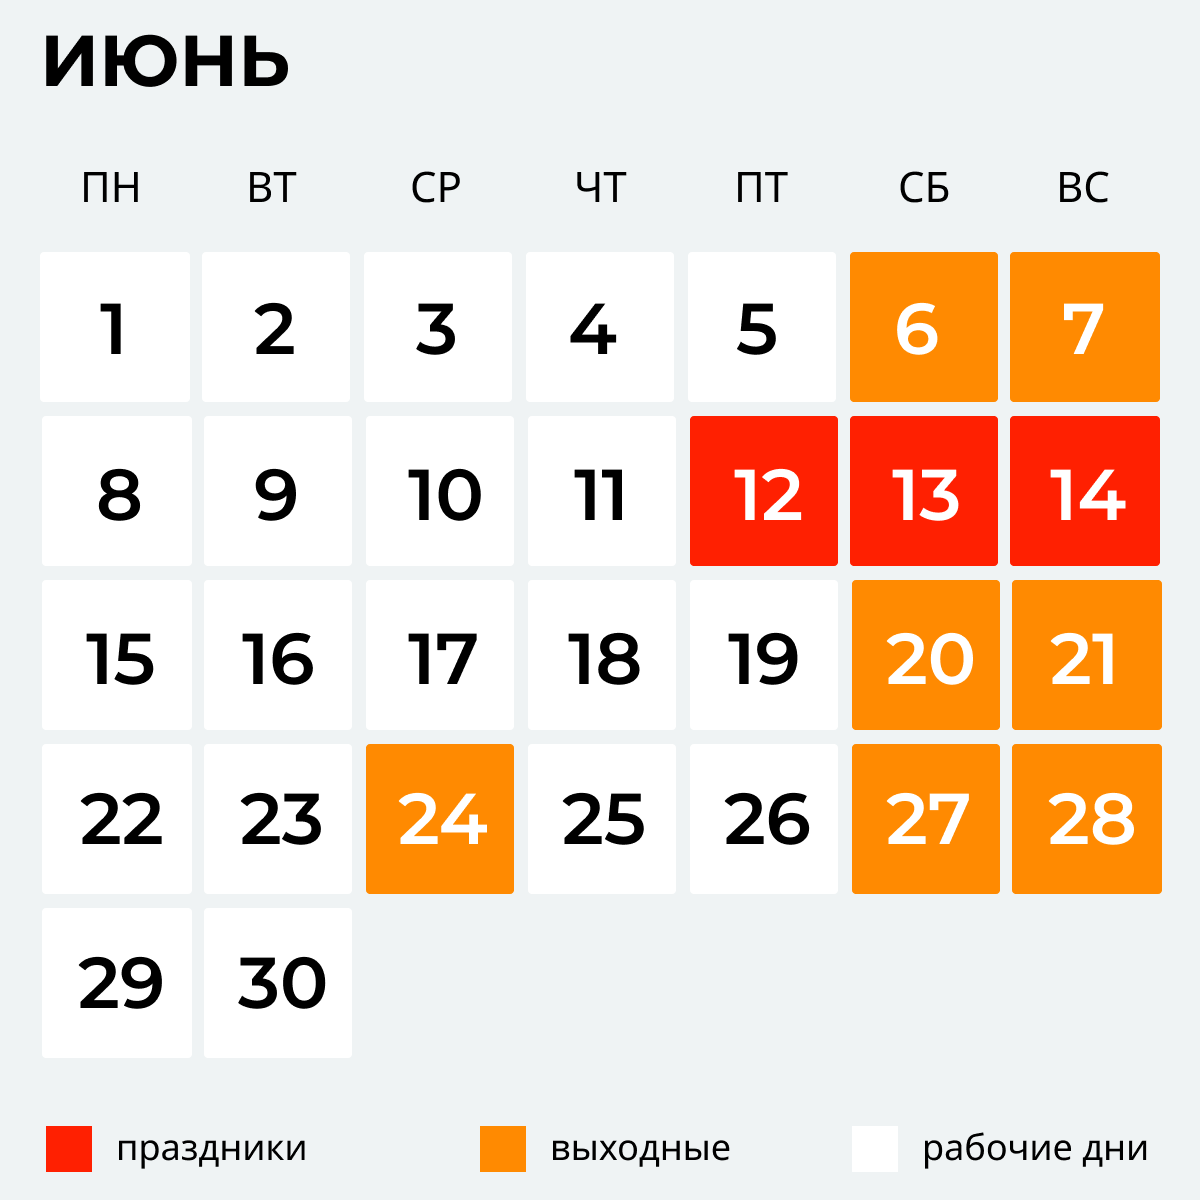 Как отдыхаем в июне 2020 — календарь выходных и праздничных дней - РИА  Новости, 15.06.2020